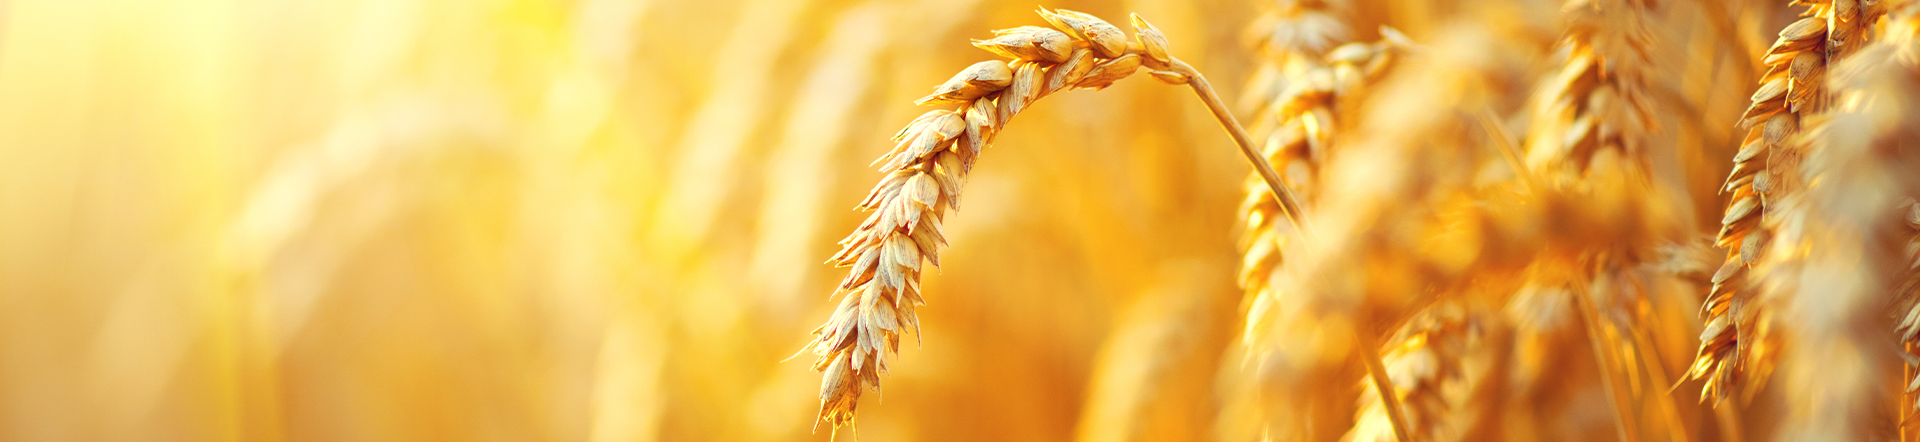 macro shot of wheat